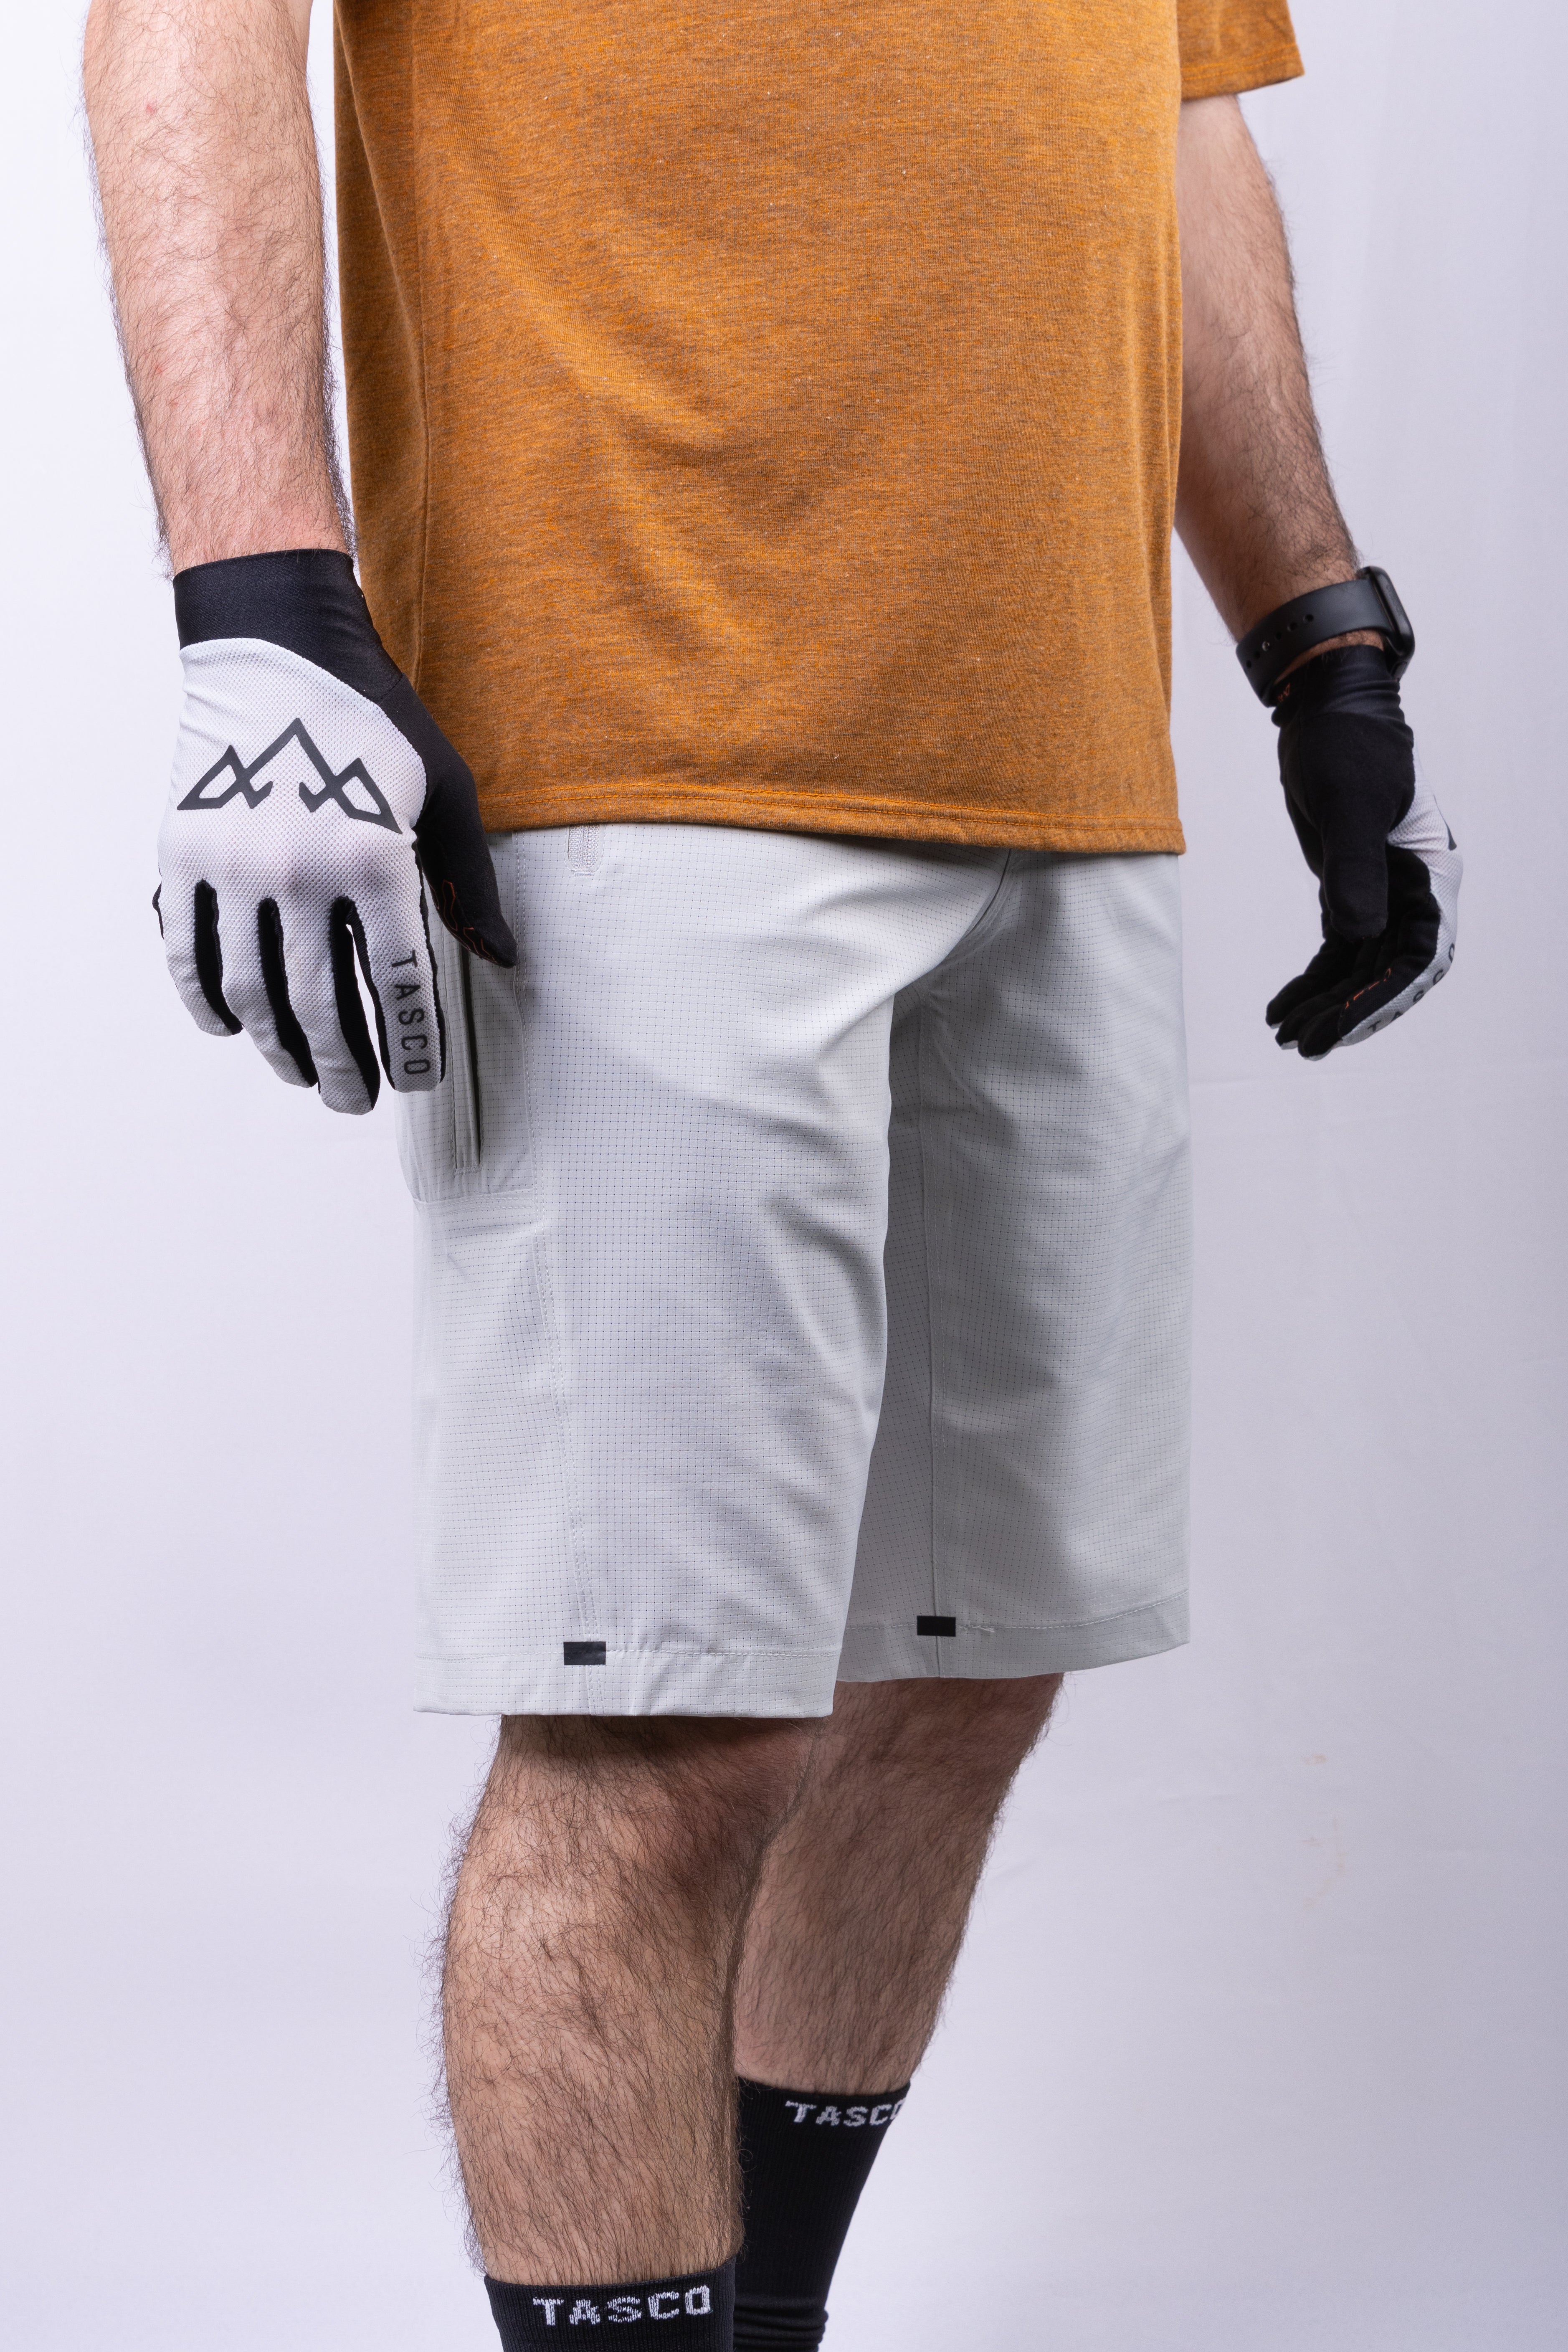 Fantom Ultralite MTB Shorts - Vapor